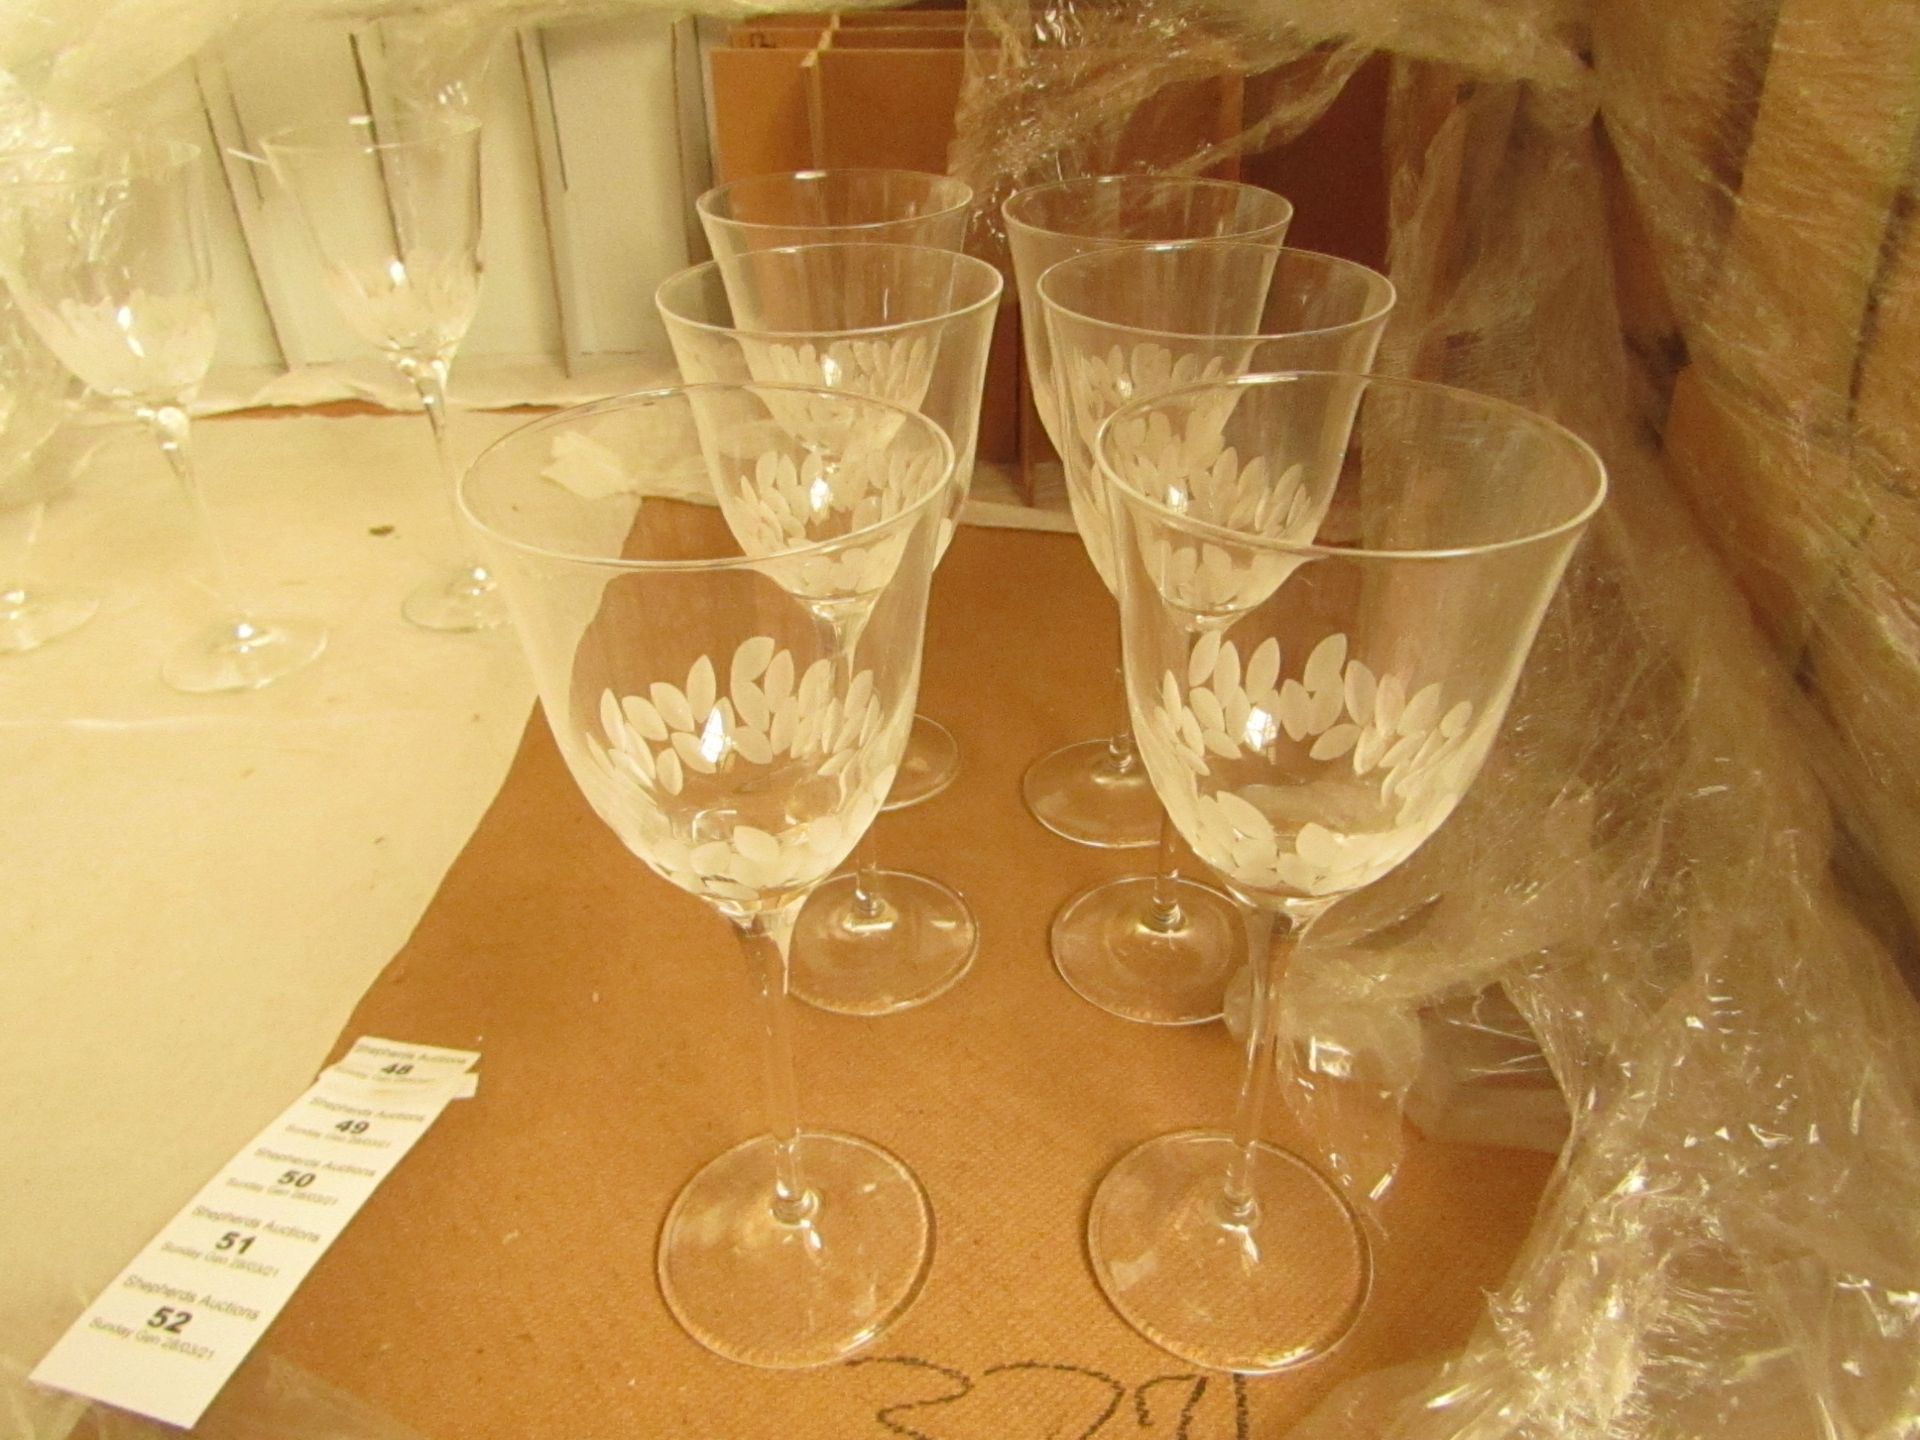 6 x Cristal De Toscane Etched Wine Glasses - New. see image for design